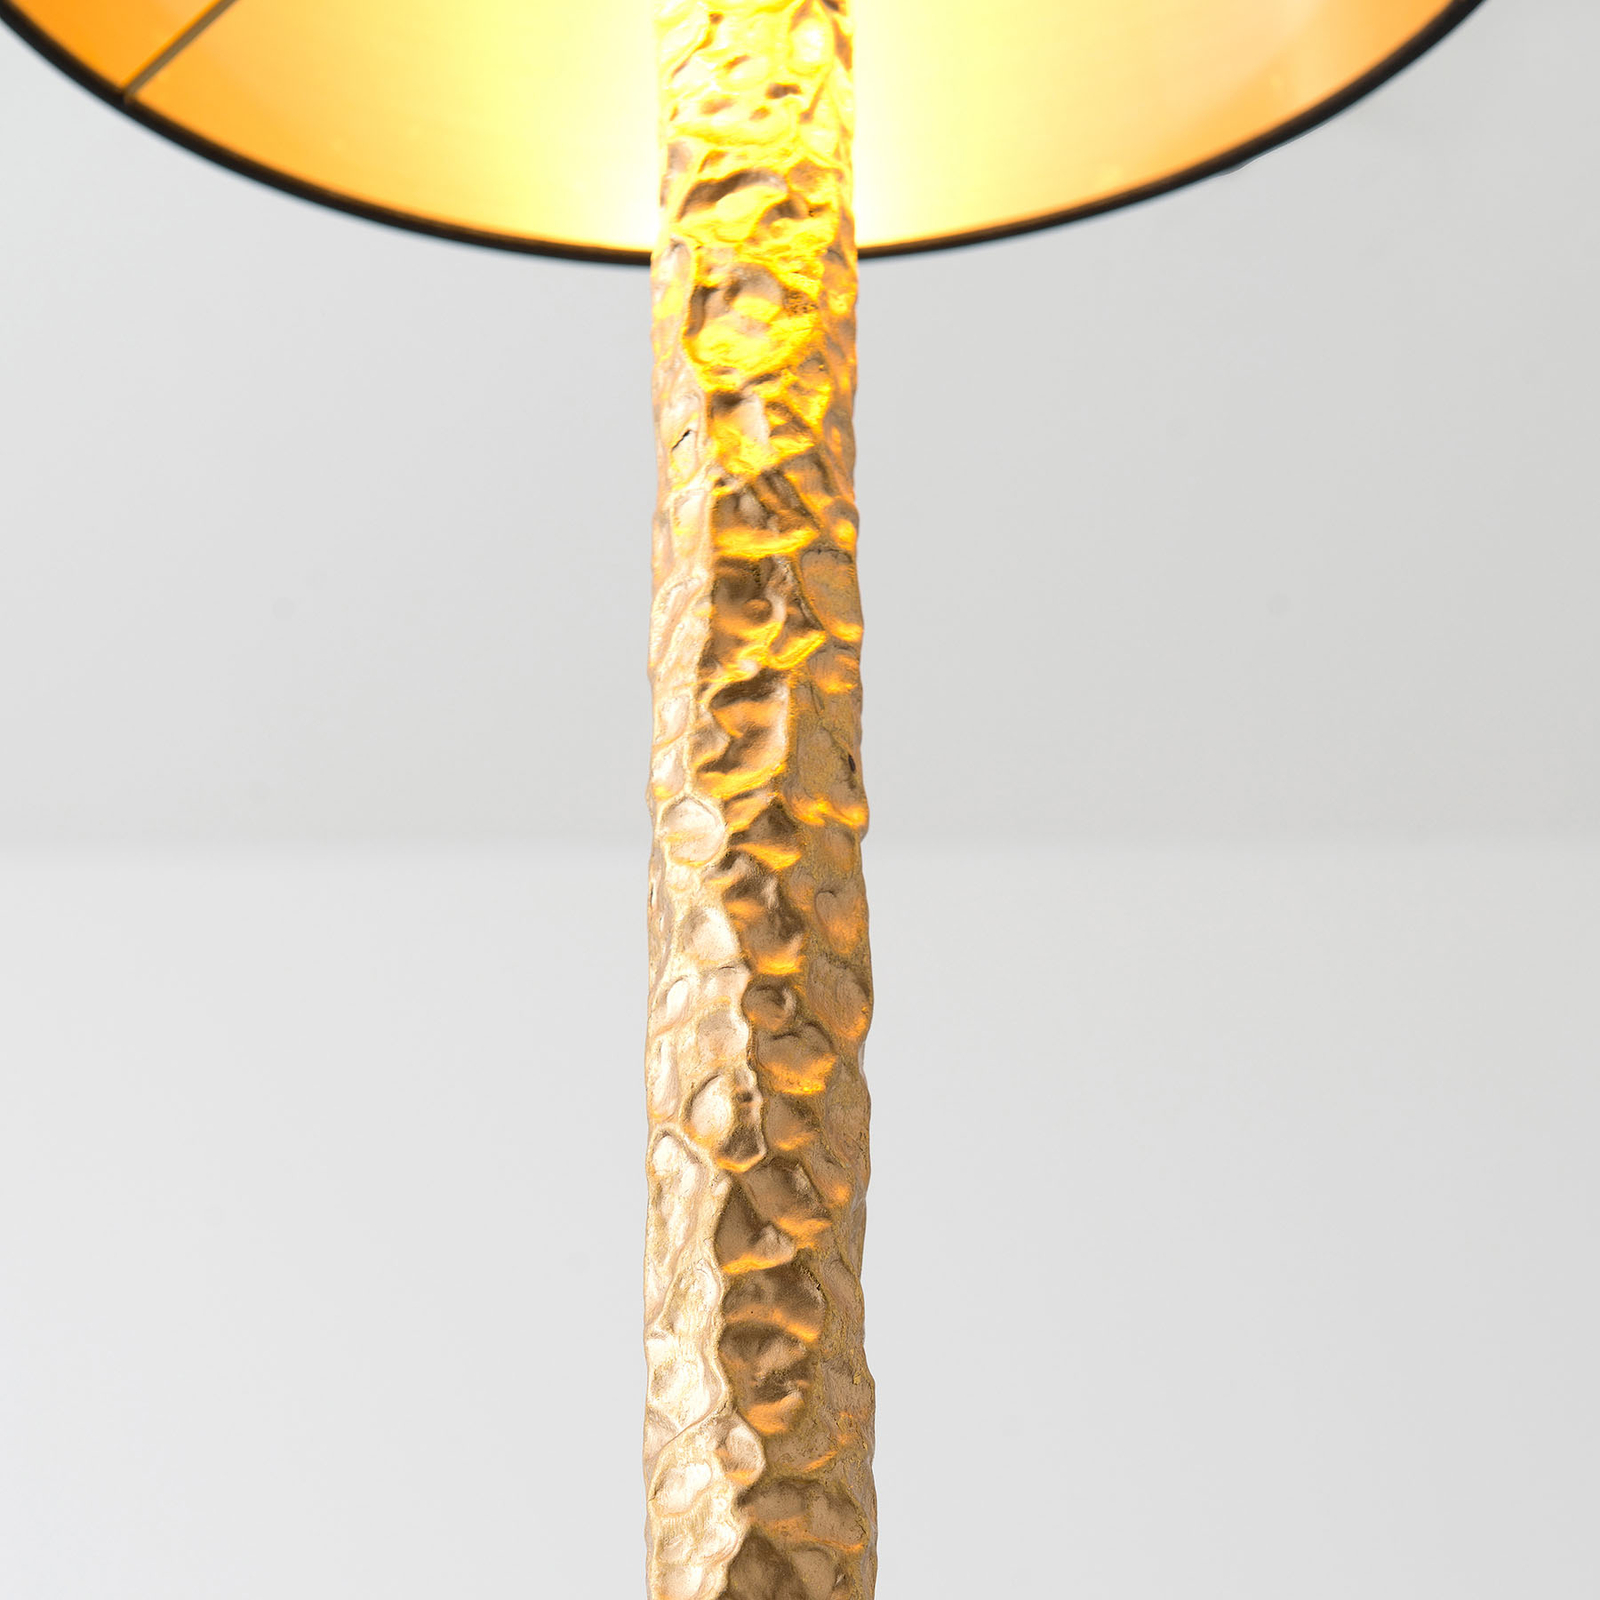 Tischlampe Cancelliere Rotonda schwarz/gold 79 cm